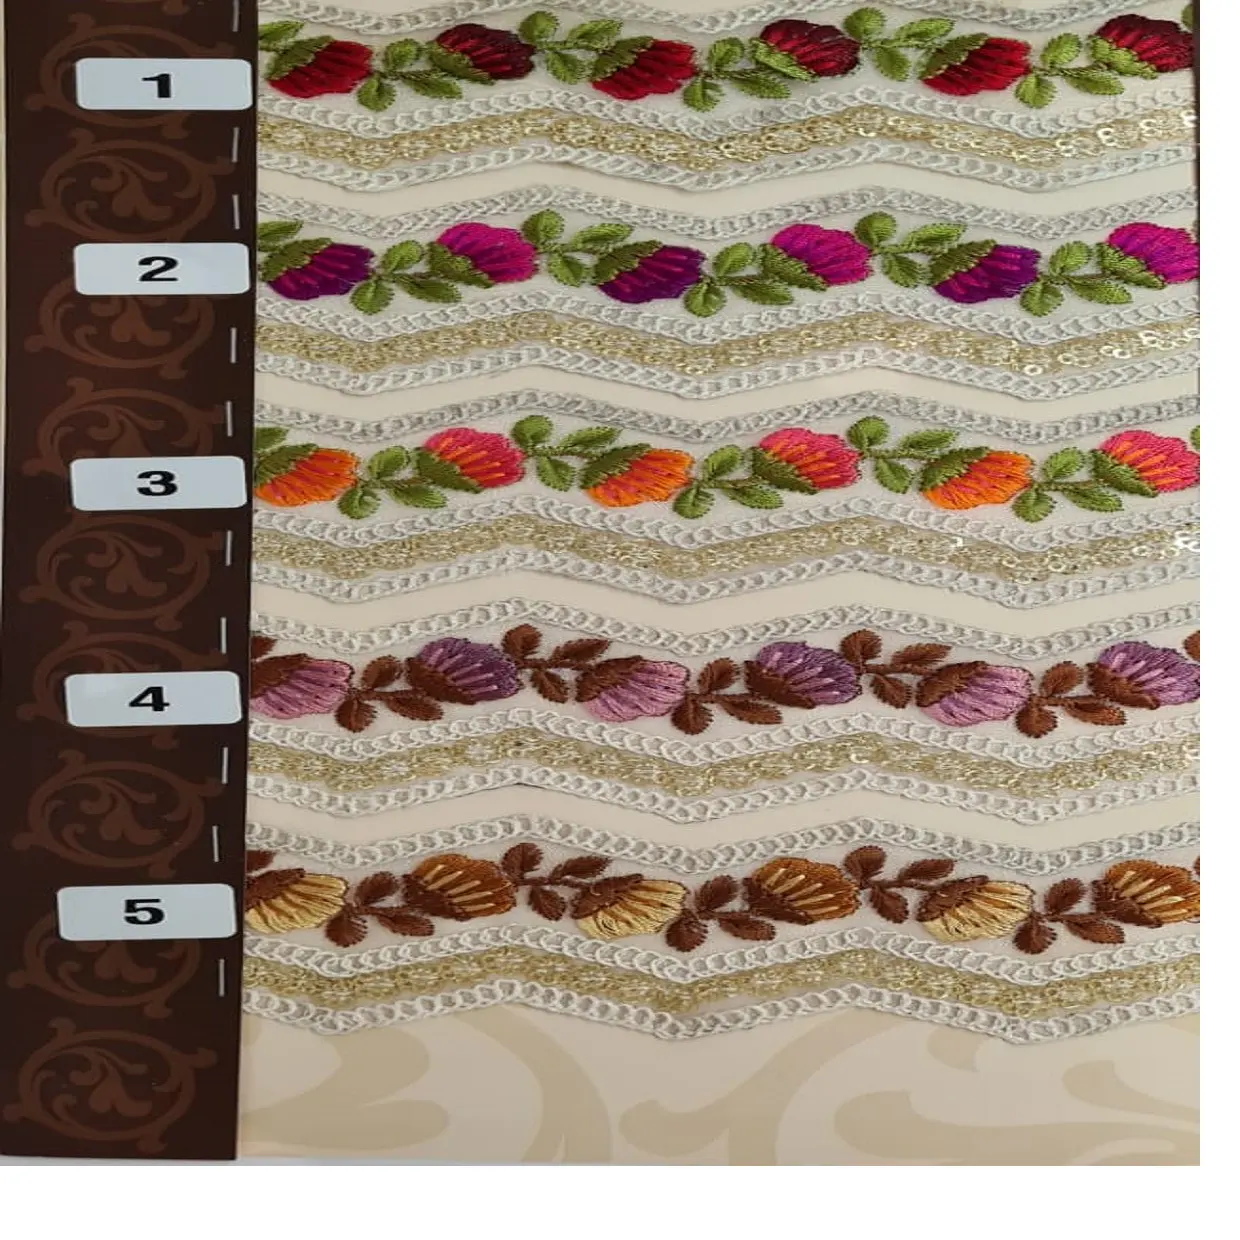 ジグザグのカットワークパターンと美しいボーダーデザインのいくつかの色のオプションでカスタムメイドの刺embroidered糸ワークレース